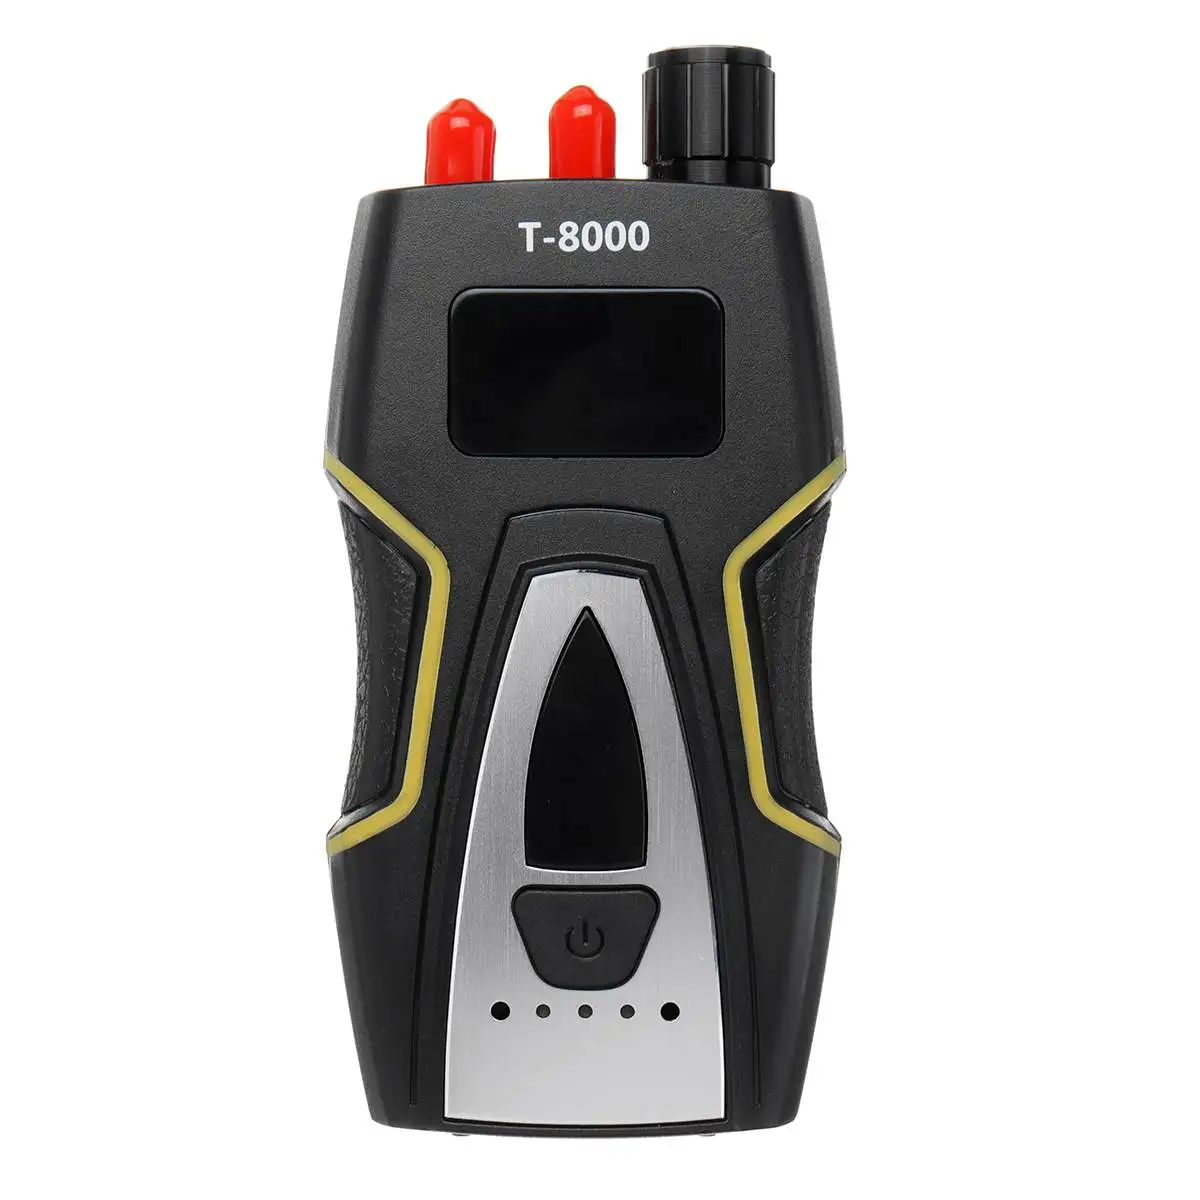 T8000 Pro безопасность РФ ошибка анти Candid камера детектор сигнала частота сканер gps беспроводной трекер для наружного бизнеса